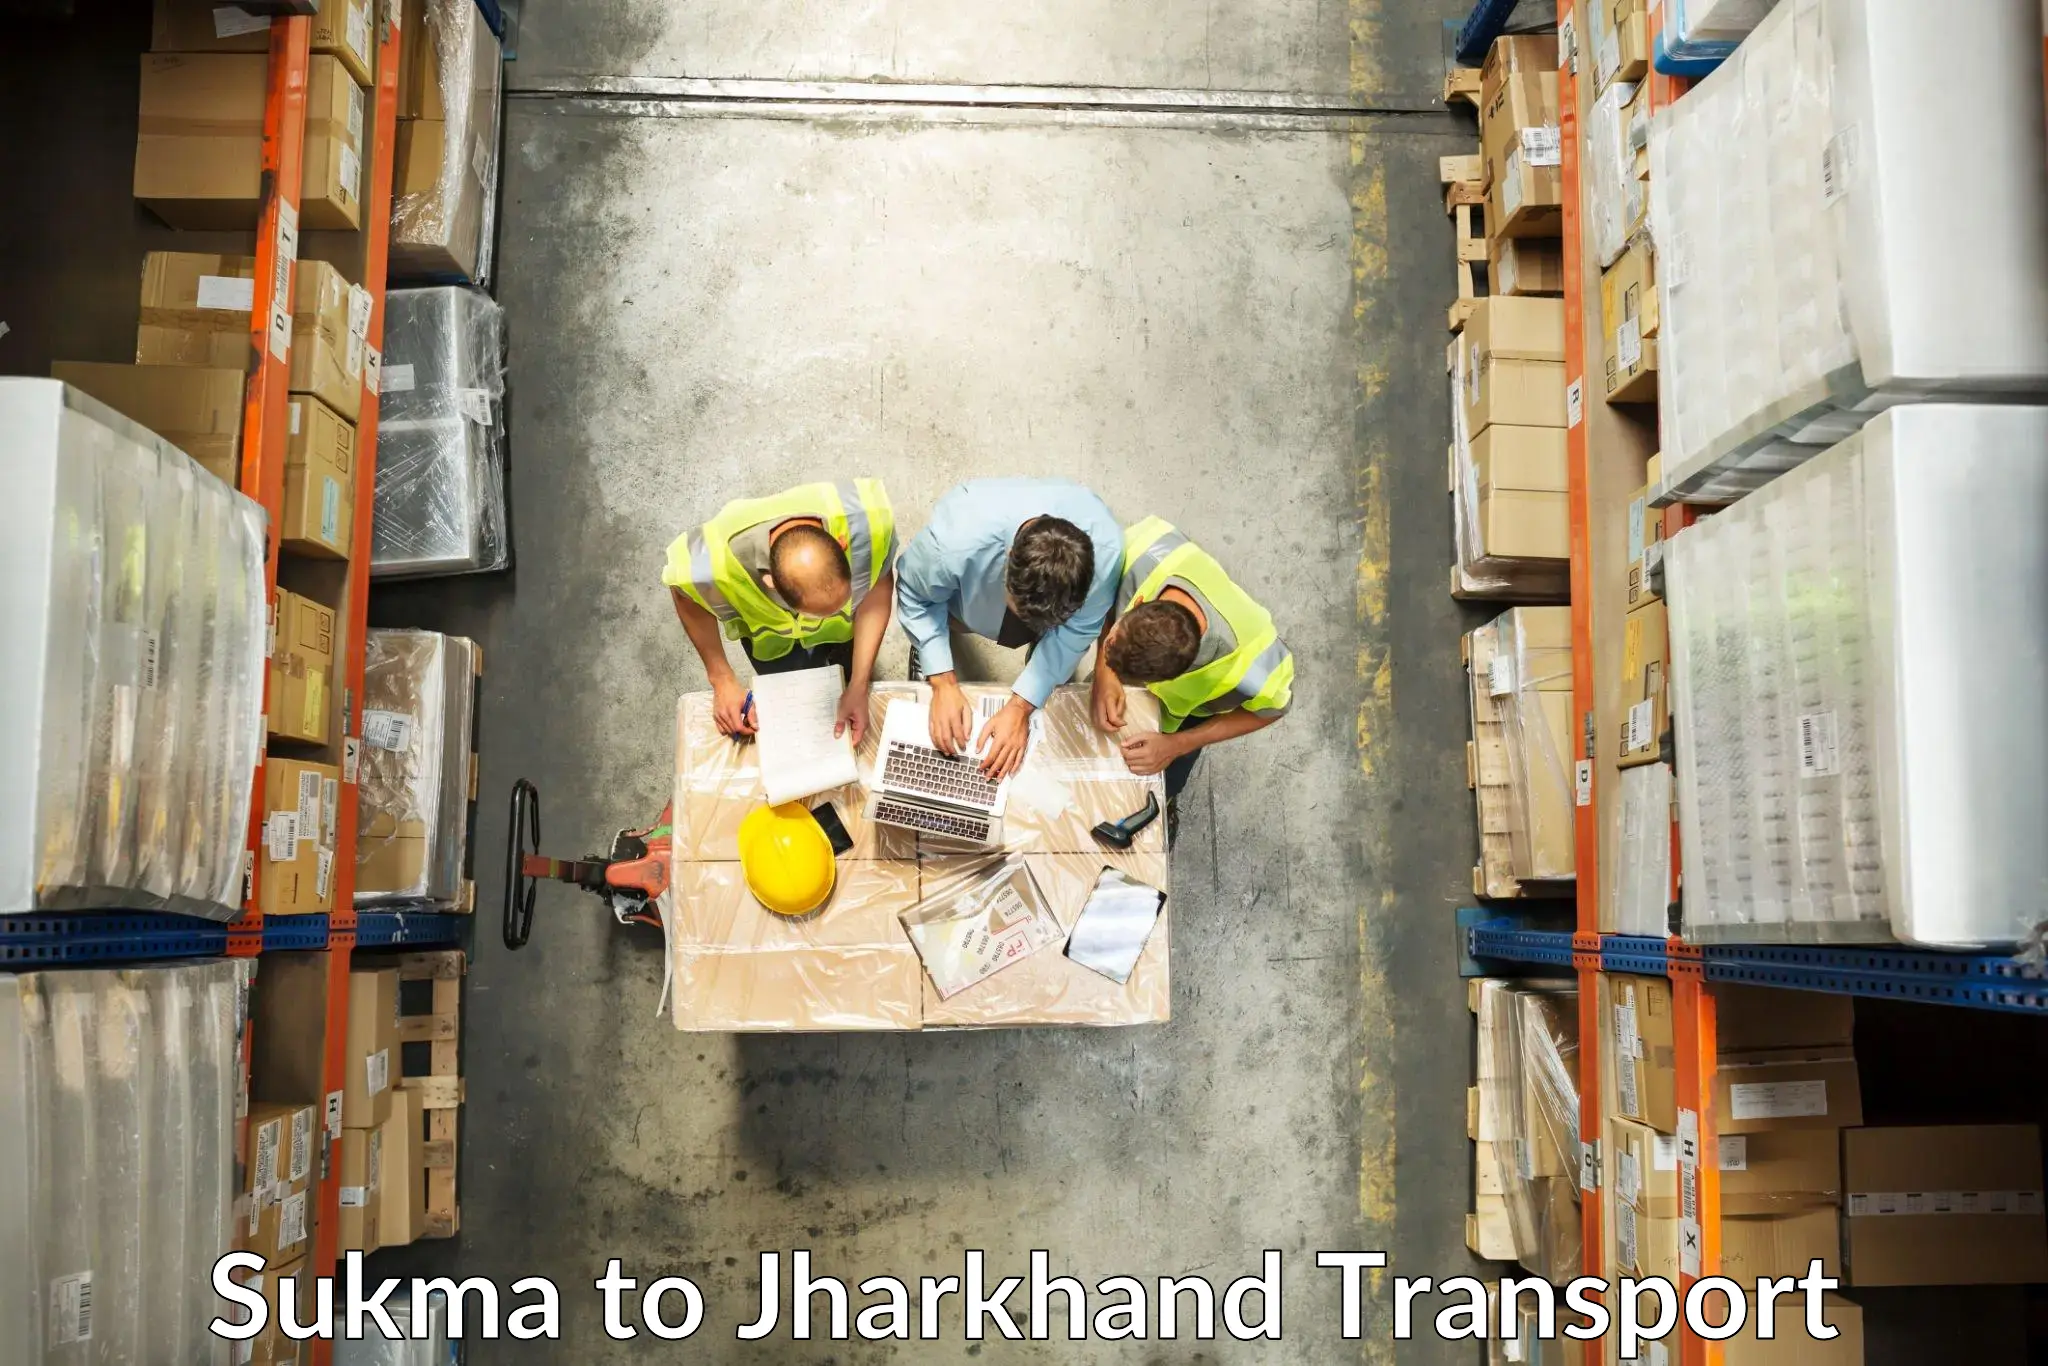 Part load transport service in India Sukma to Medininagar